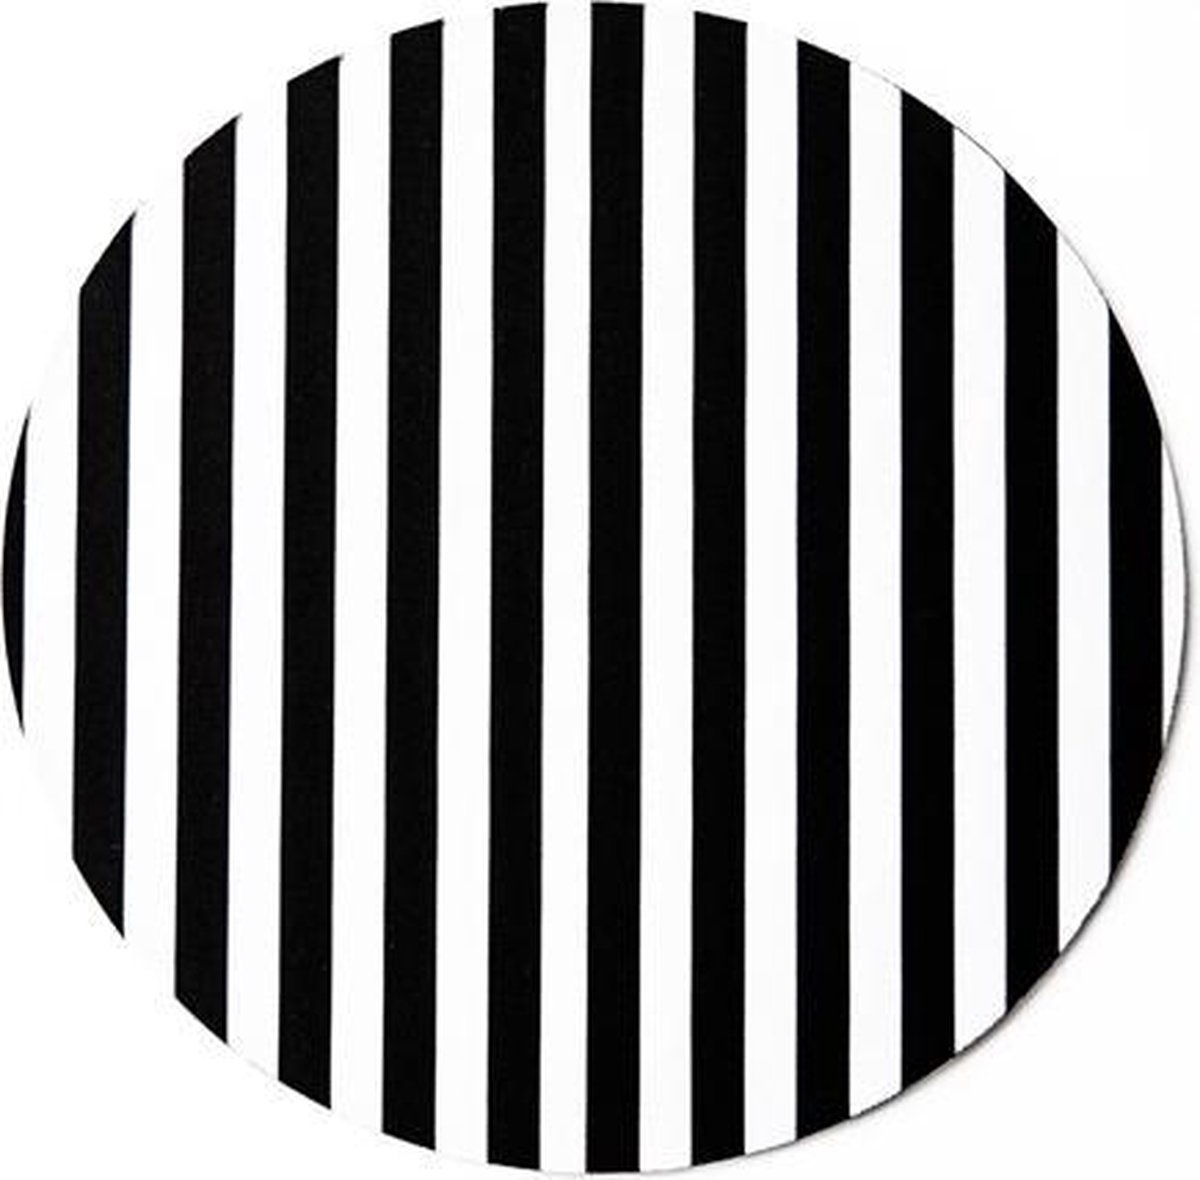 Computer - muismat stripes zwart wit - rond - rubber - buigbaar - anti-slip - mousepad